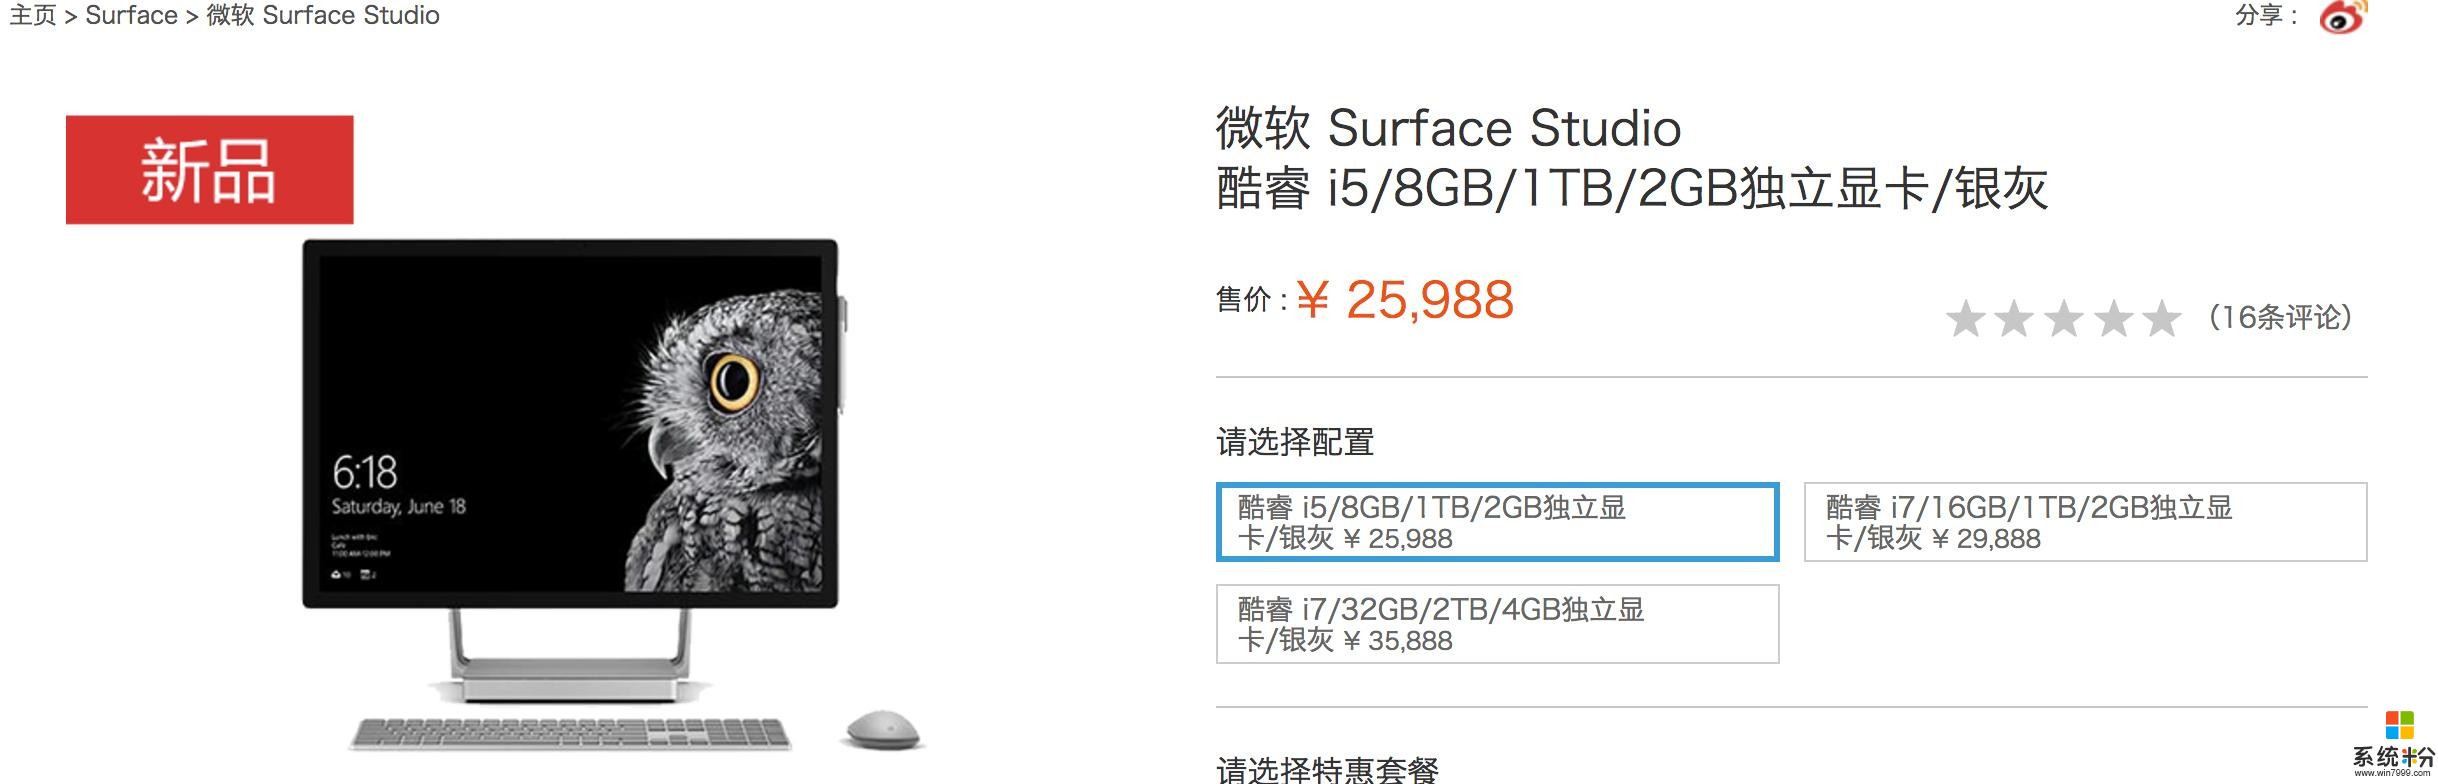 微軟中國官網新上架三款surface新品5888元起(8)